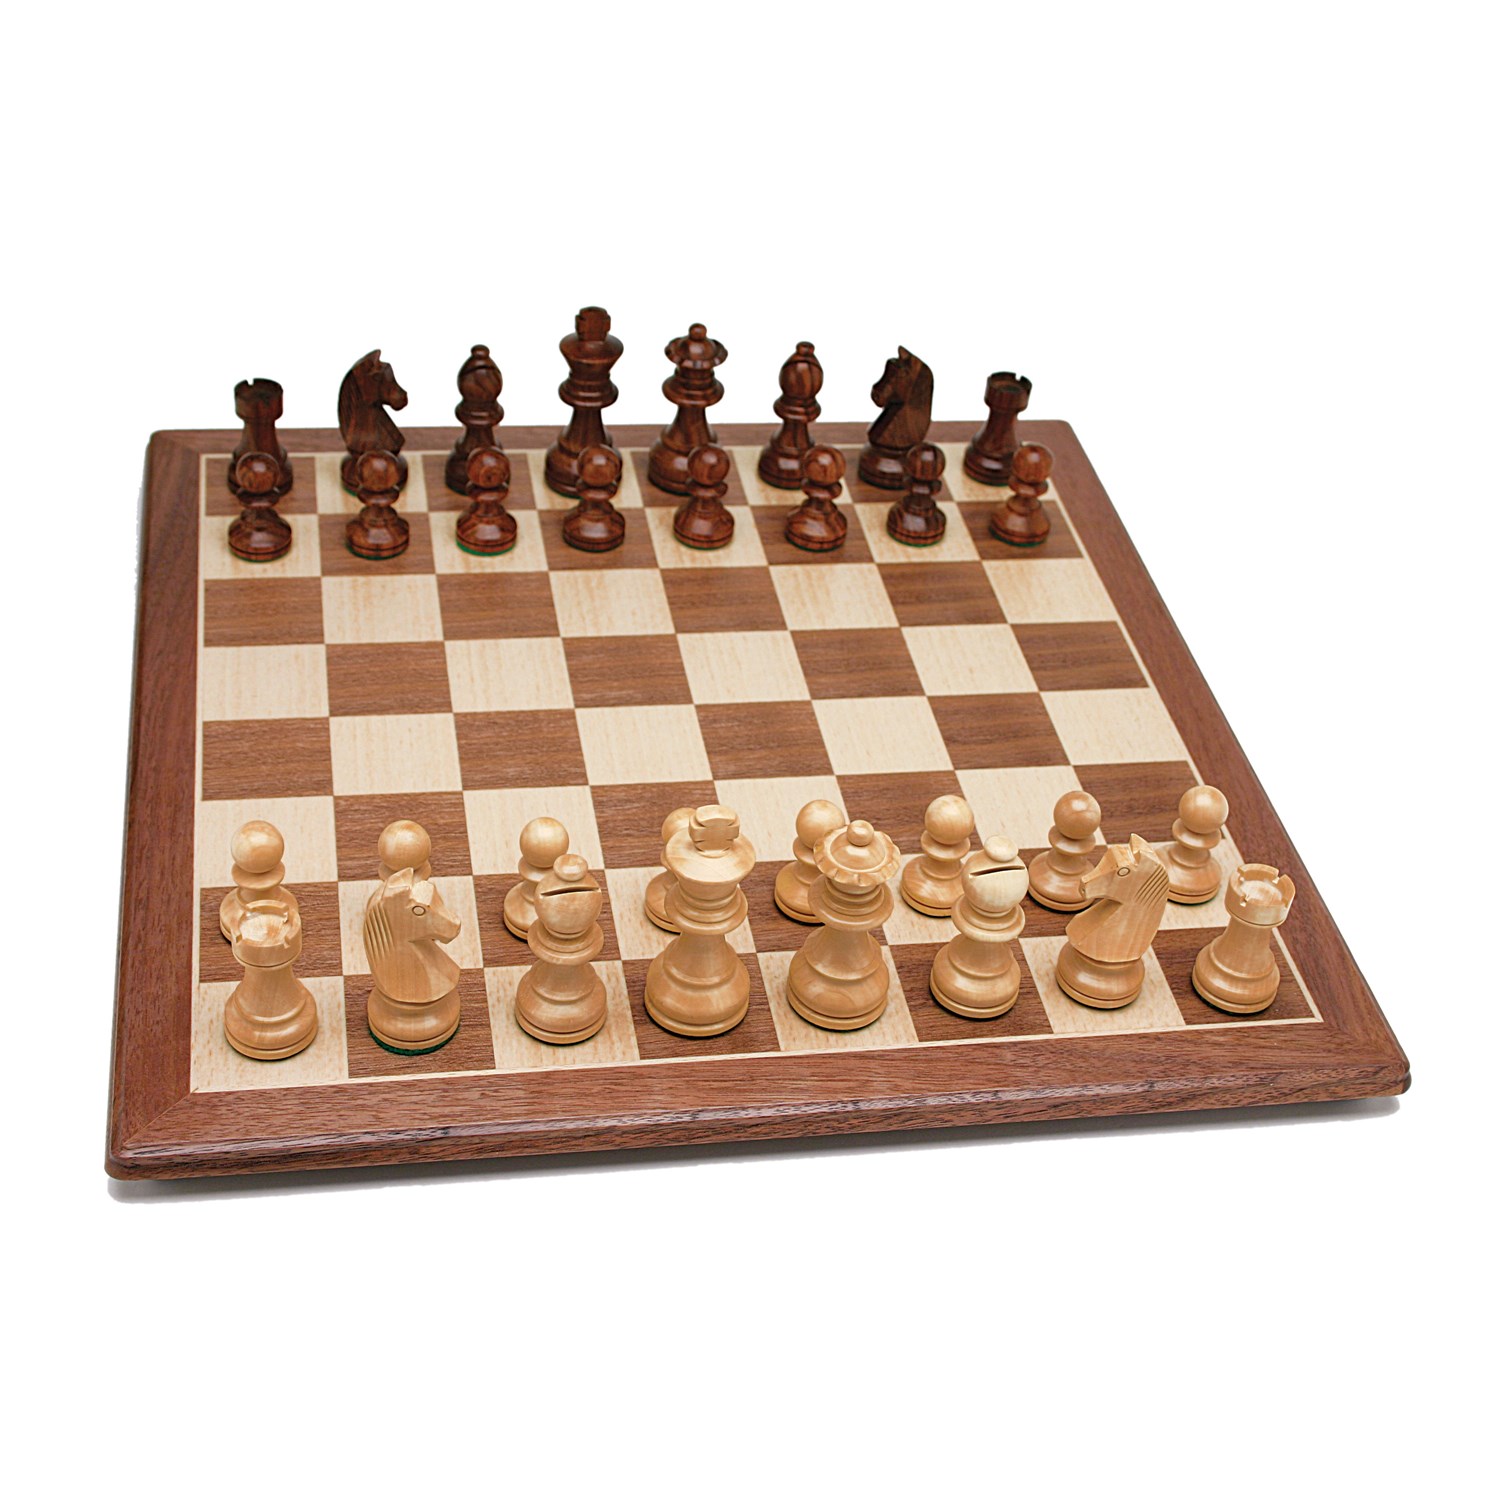 weighted,felted pieces Standard wooden tournament chess set  ESSEN STAUNTON 